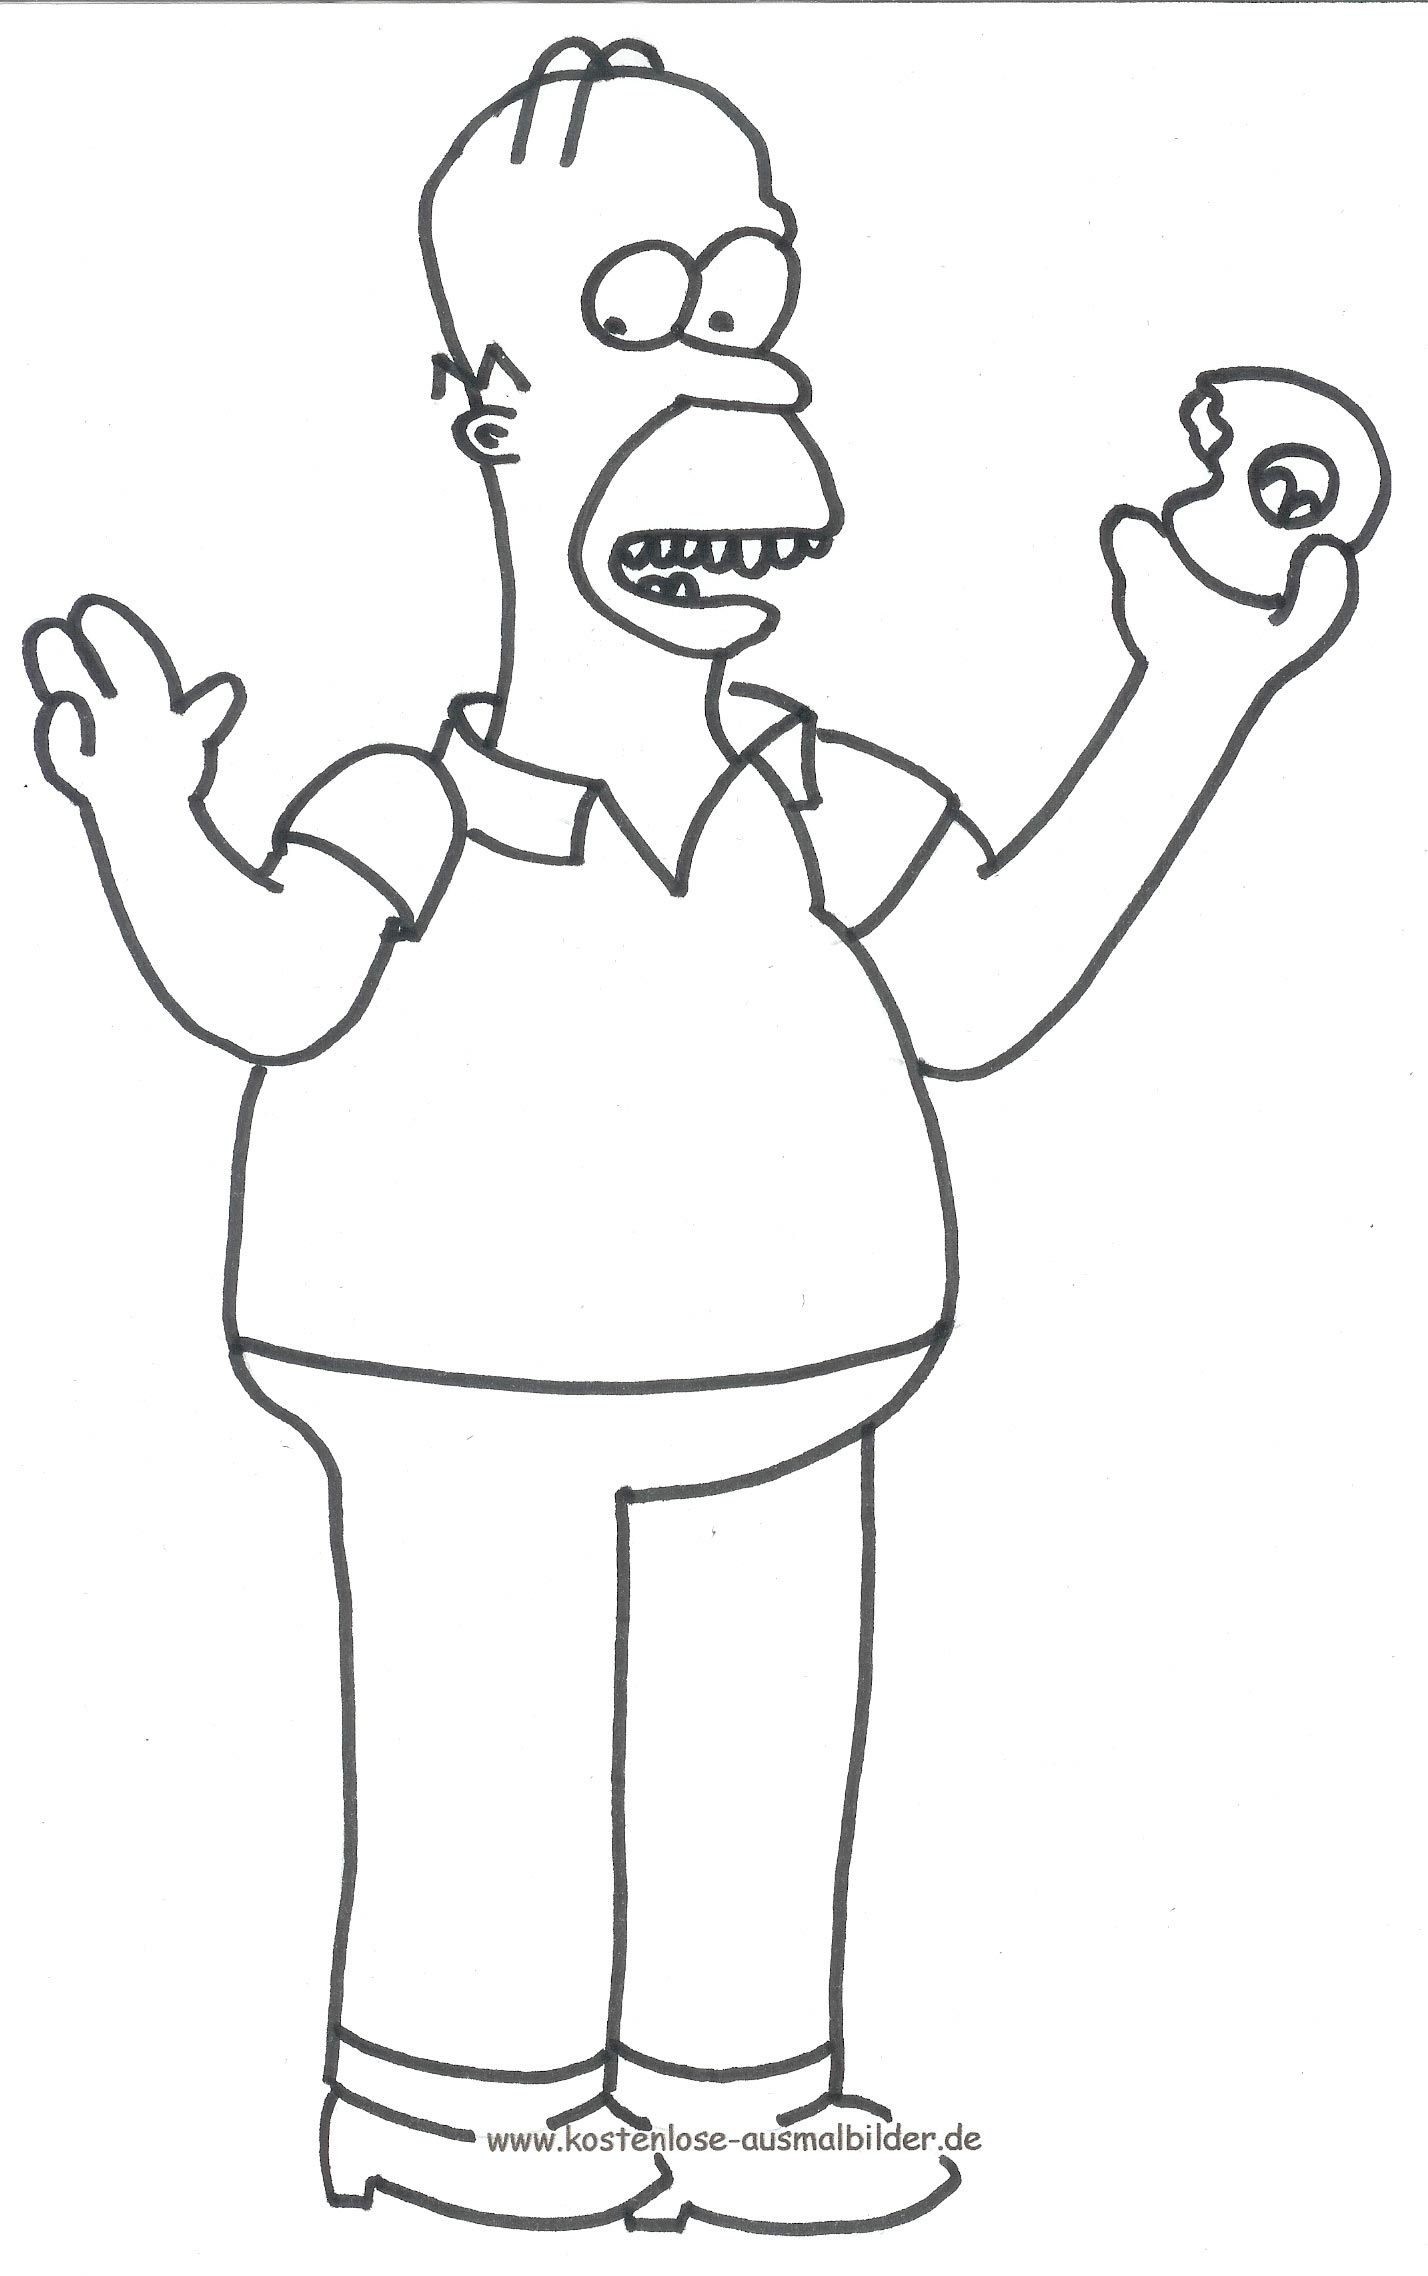 Malvorlagen Ausmalbilder Simpsons Ausmalbilder Fernsehen zum Ausdrucken